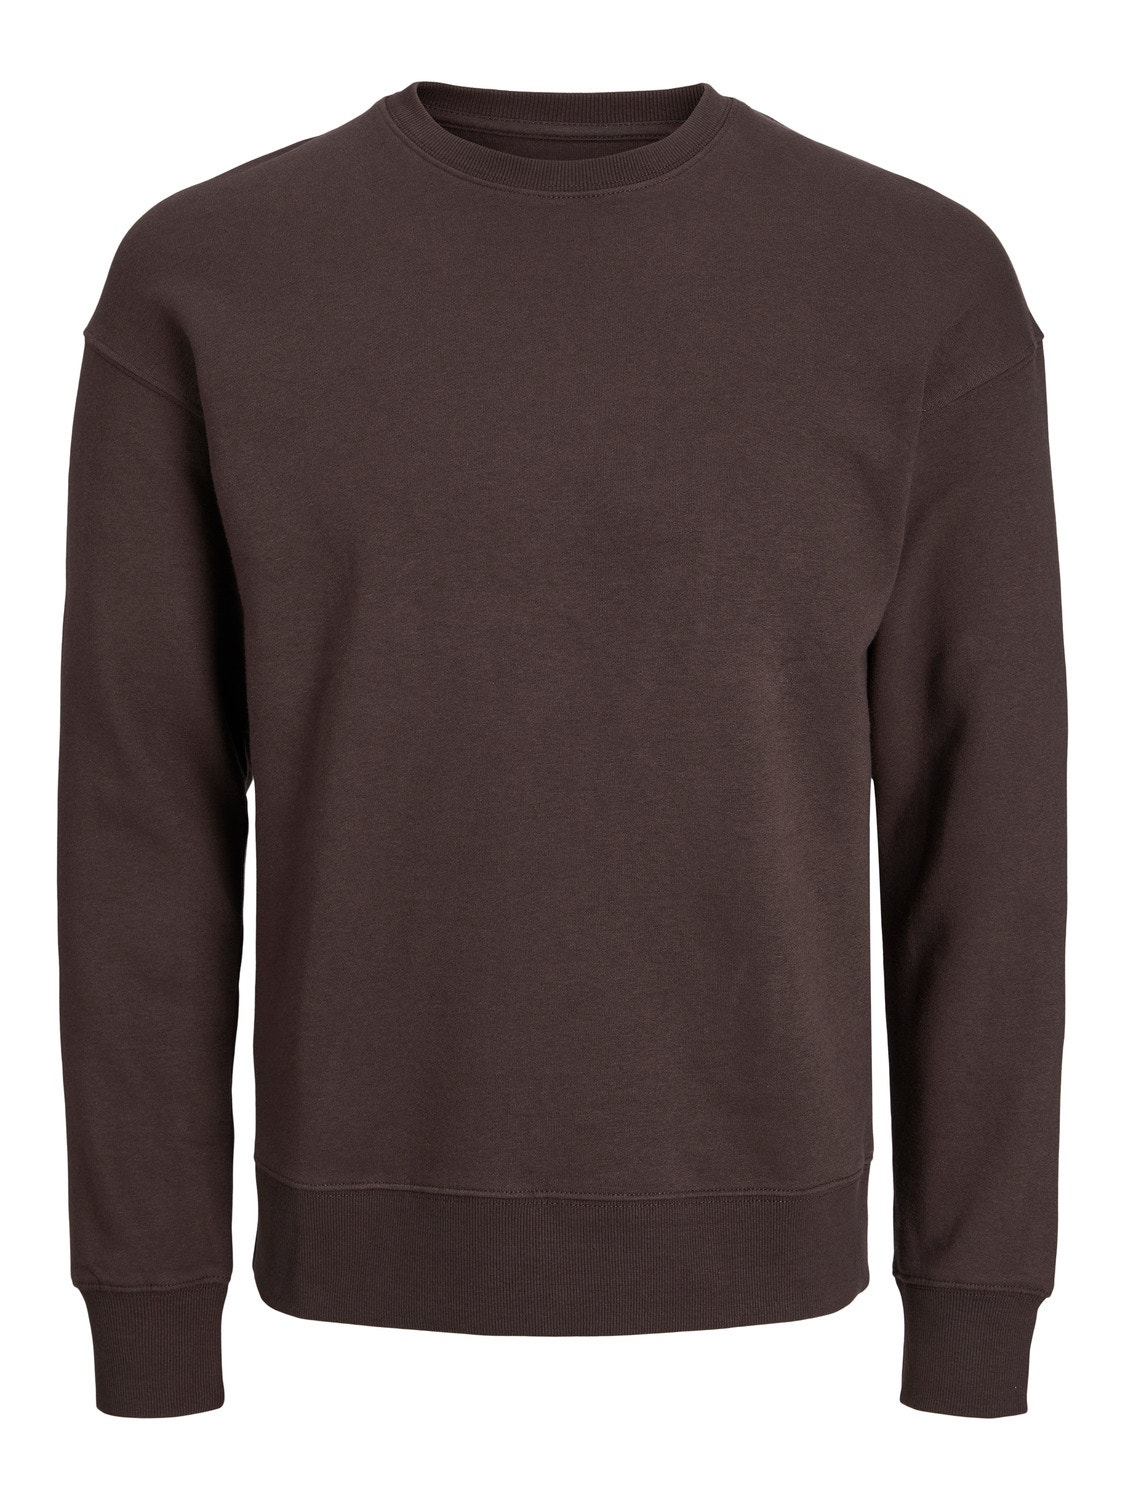 Jack & Jones Plain Crew neck Sweatshirt -Seal Brown - 12208182